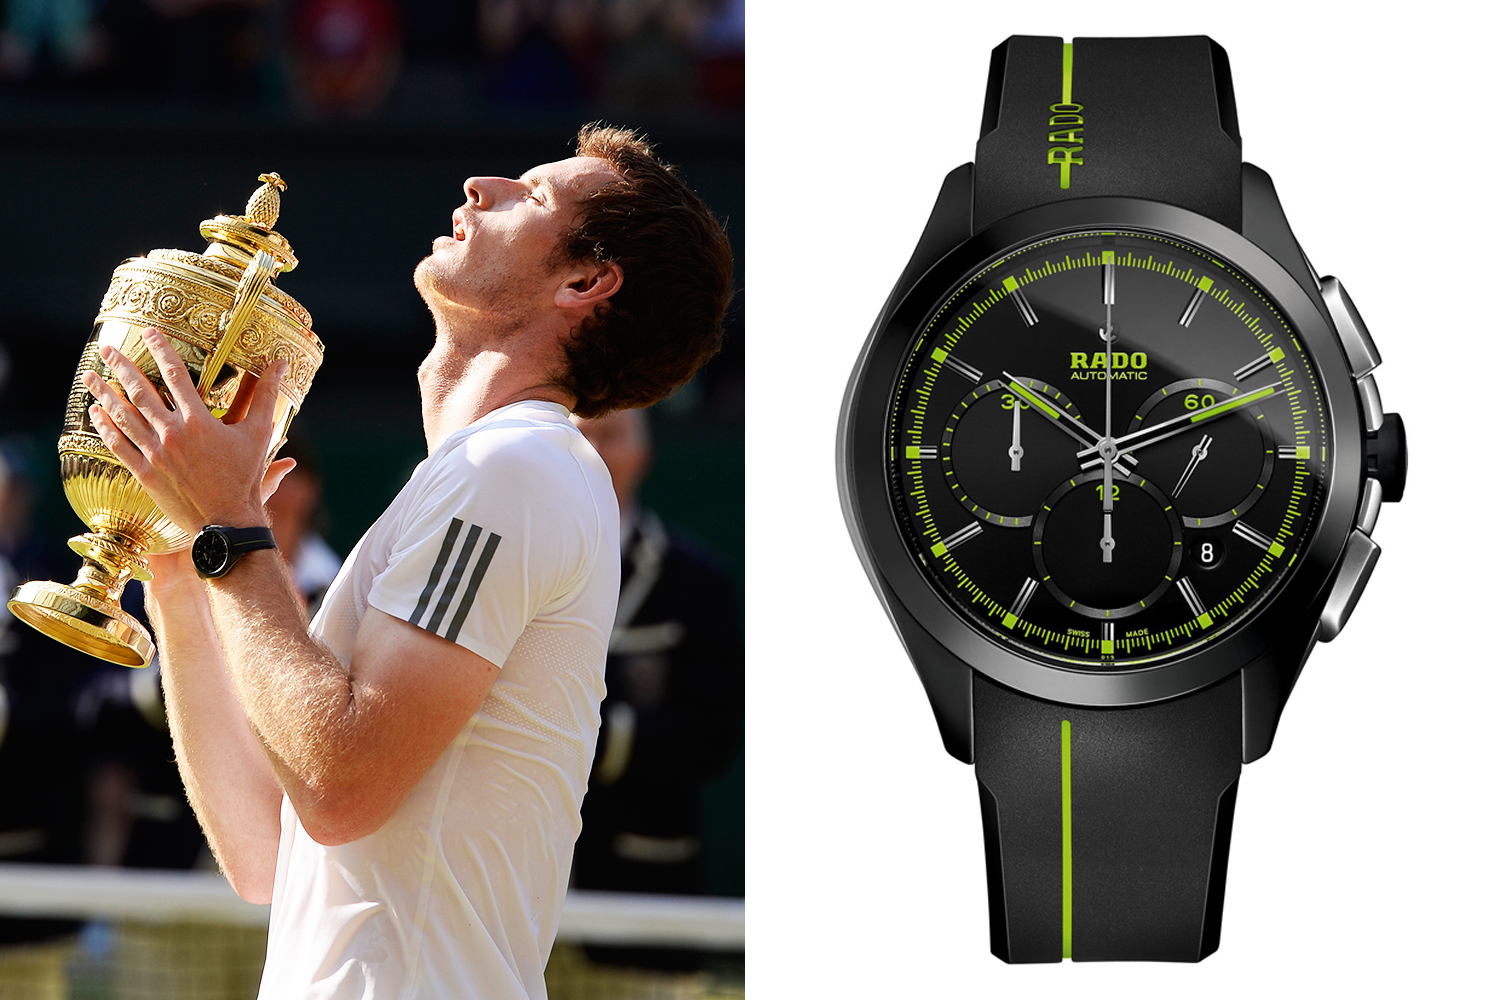   Andy Murray trug eine Rado-Uhr, als er 2016 die Wimbledon-Trophäe in die Höhe stemmte, aber peinlicherweise zeigte sie die falsche Zeit an